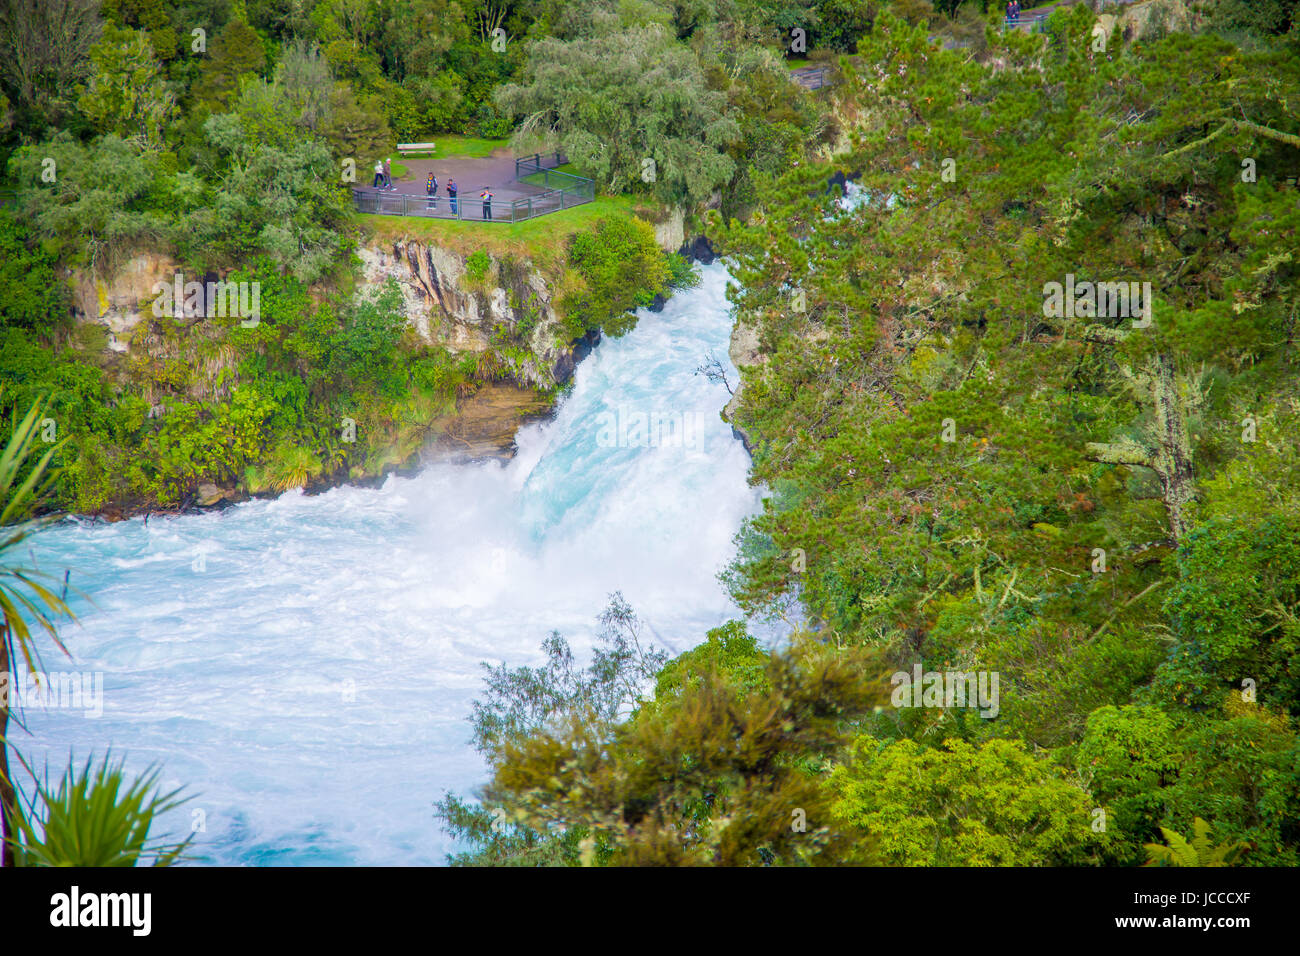 Leistungsstarke Huka Falls auf dem Waikato River in der Nähe von Taupo Nordinsel Neuseeland. Stockfoto